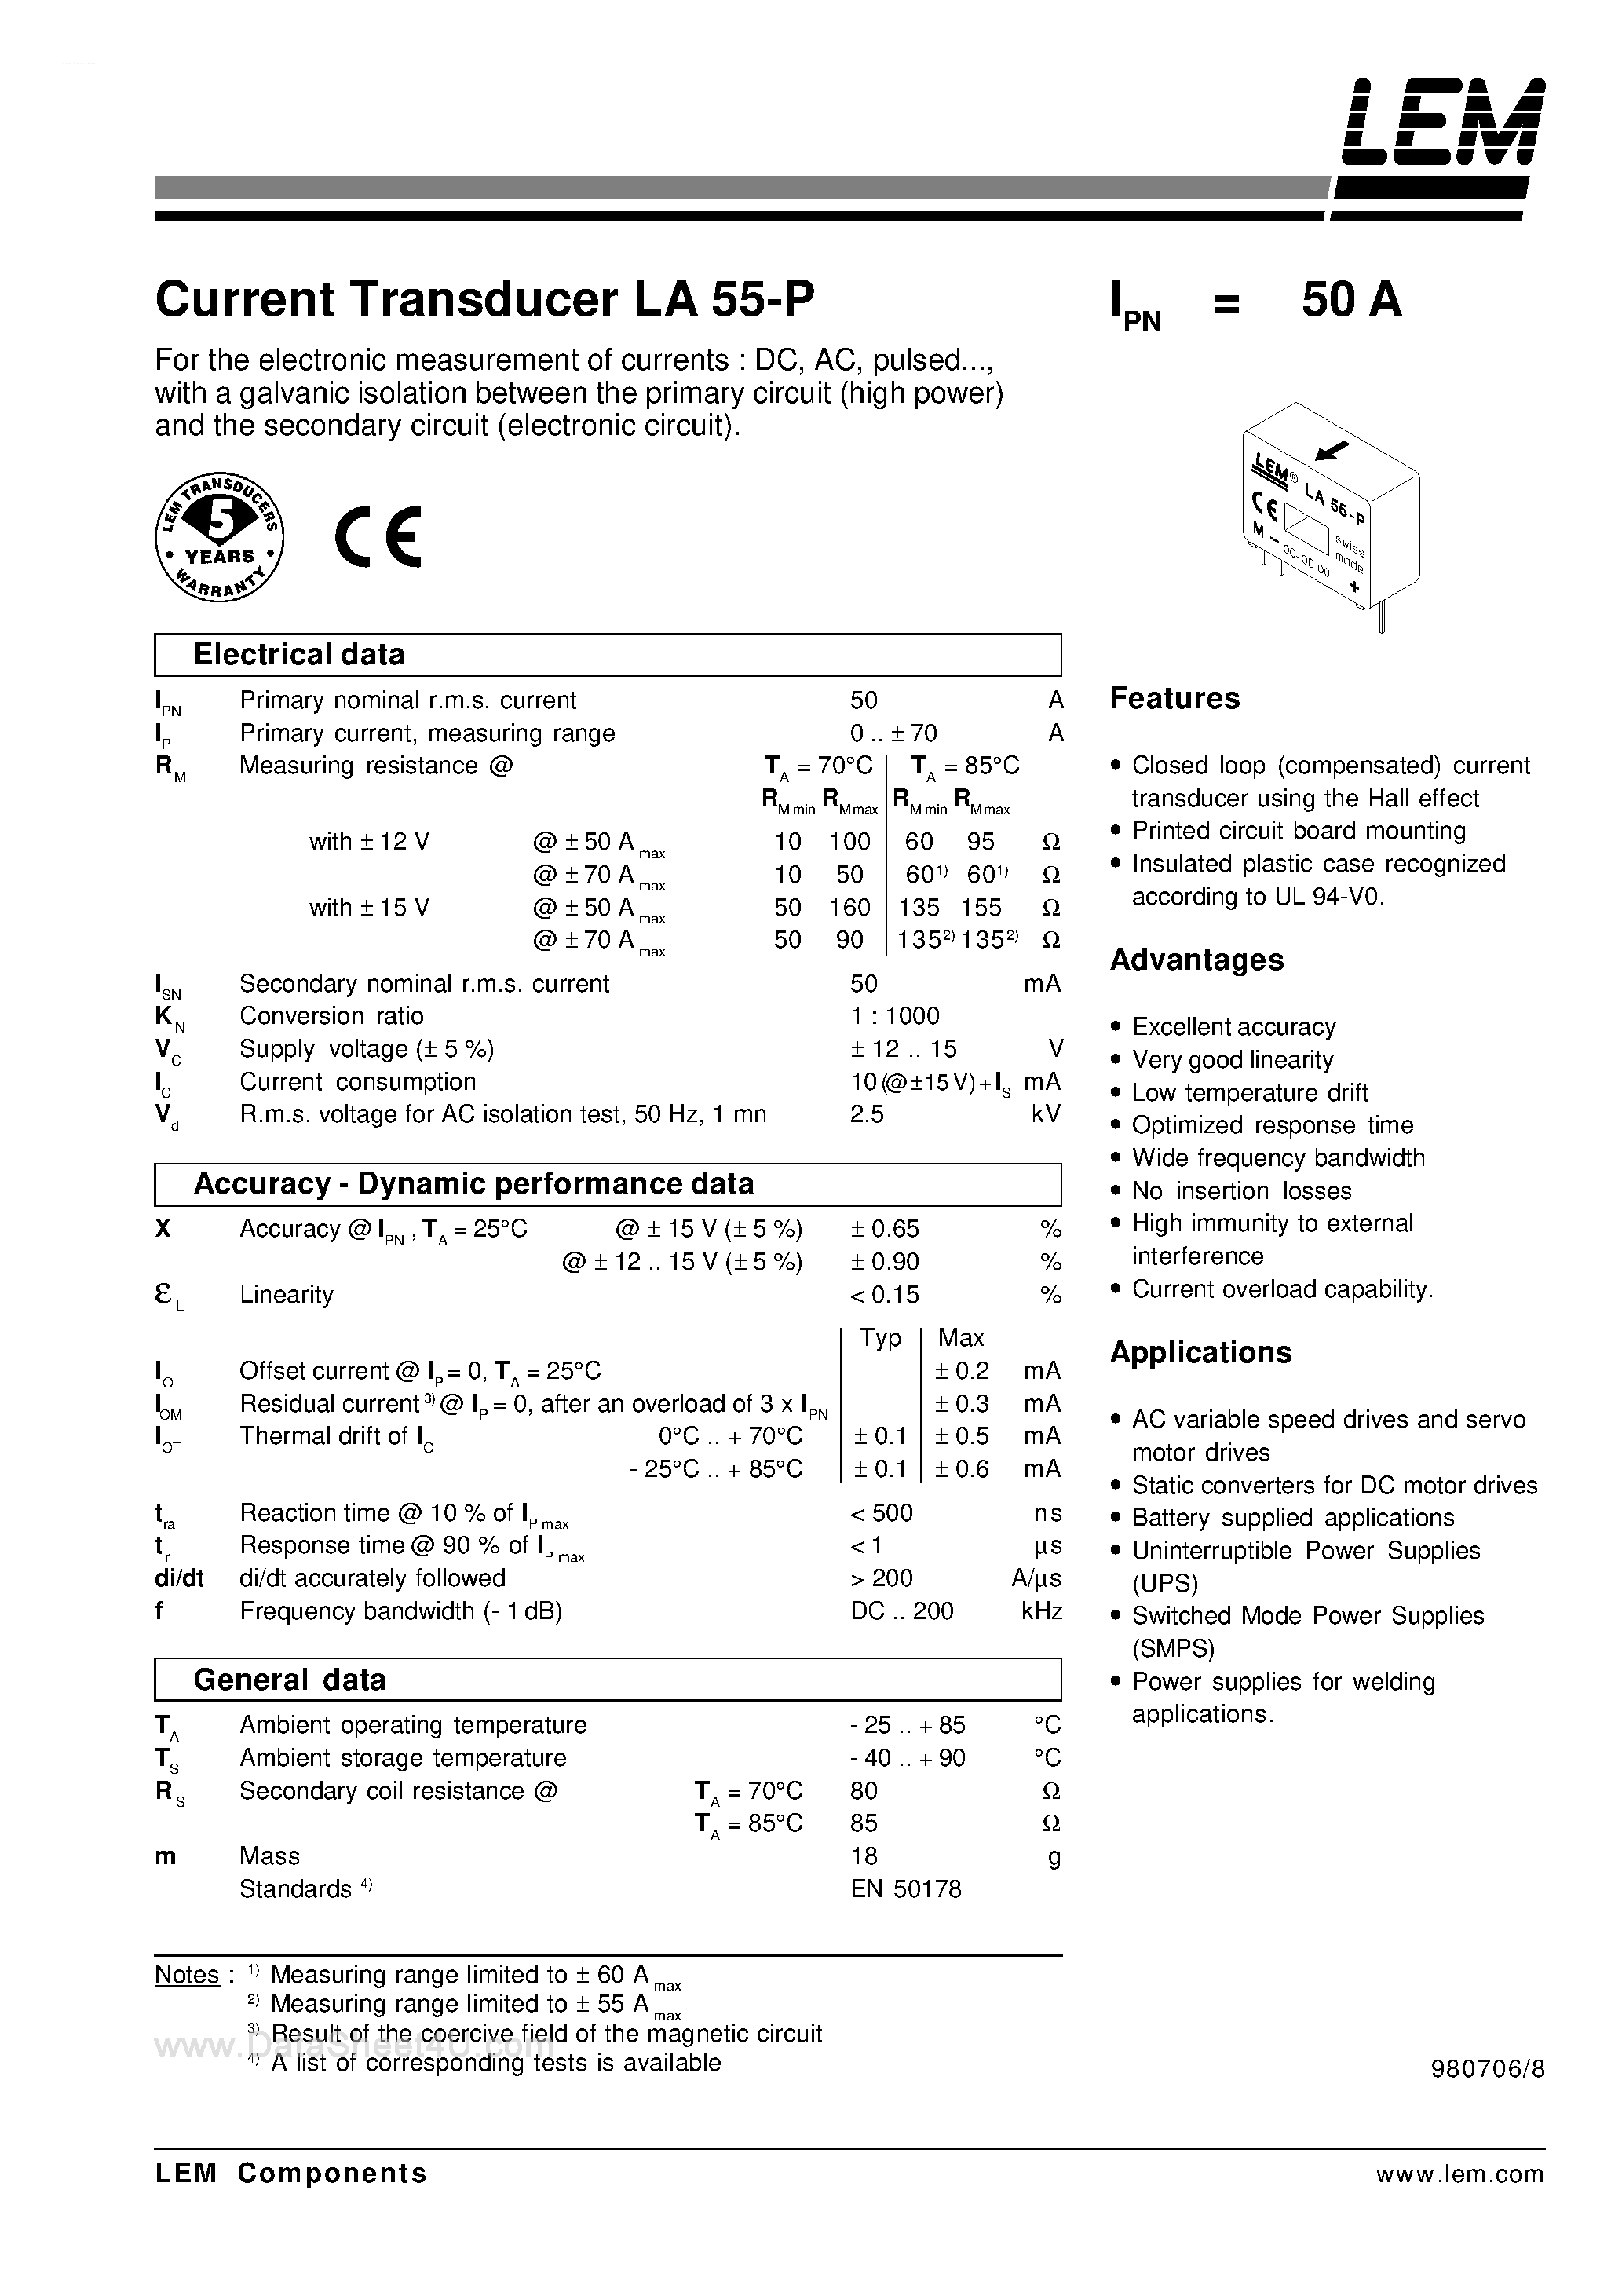 Datasheet LA55-P - Current Transducer LA 55-P page 1